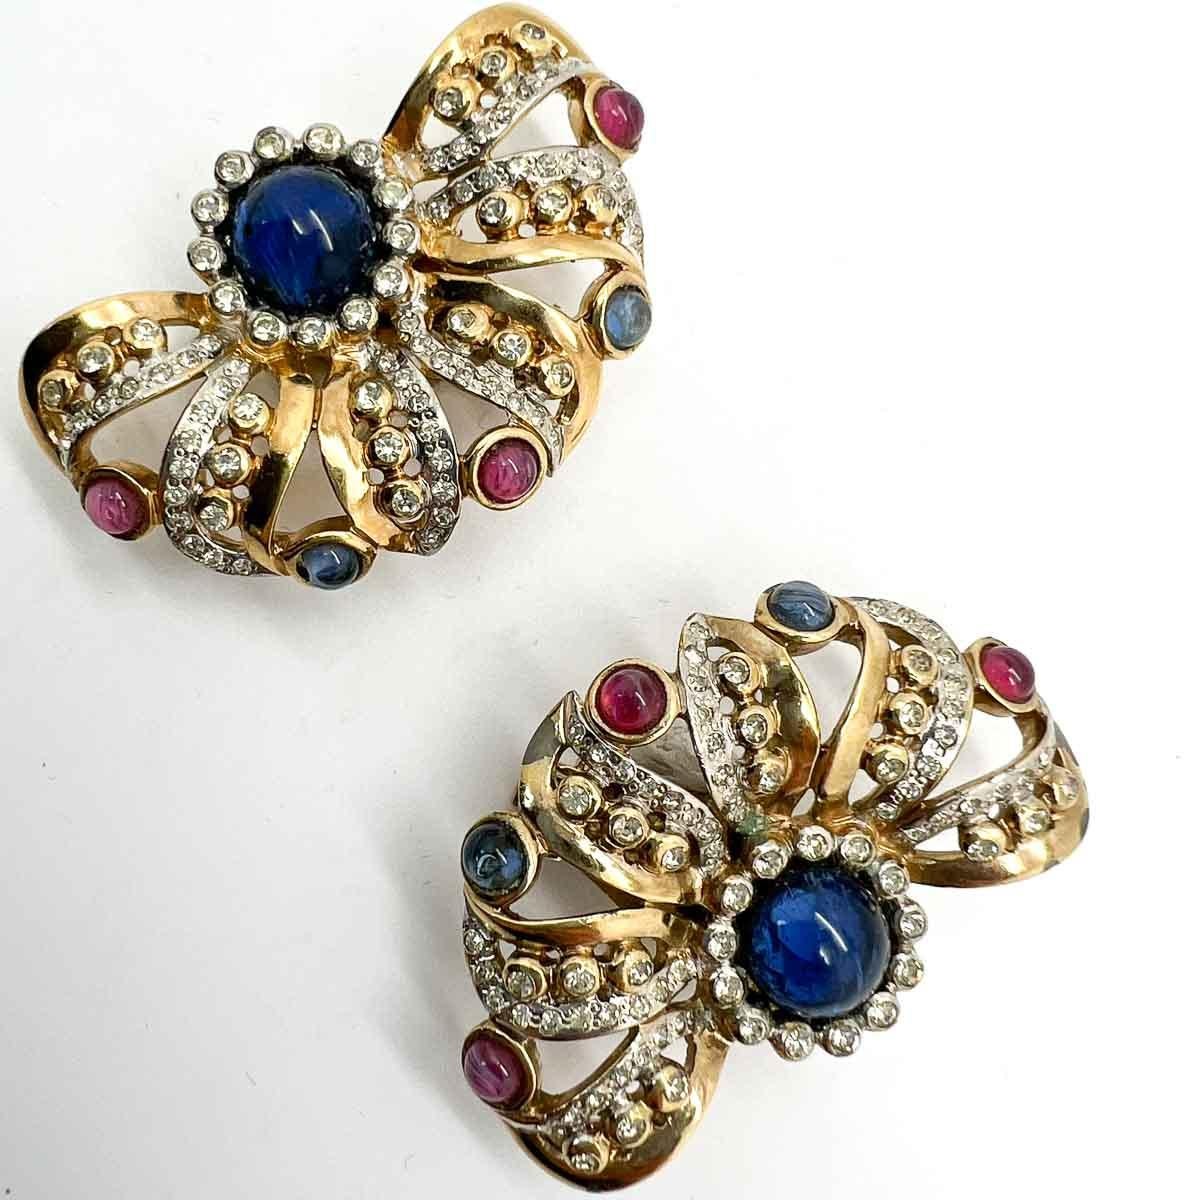 Ein italienisches Paar Cabochon-Fächer-Ohrringe im Vintage-Stil. Diese exquisit gefertigten Schmuckstücke zeichnen sich durch ein kompliziertes Design aus, das mit Cabochon-Steinen in Saphirblau und Rubinrot besetzt ist. Eine unsignierte Schönheit.